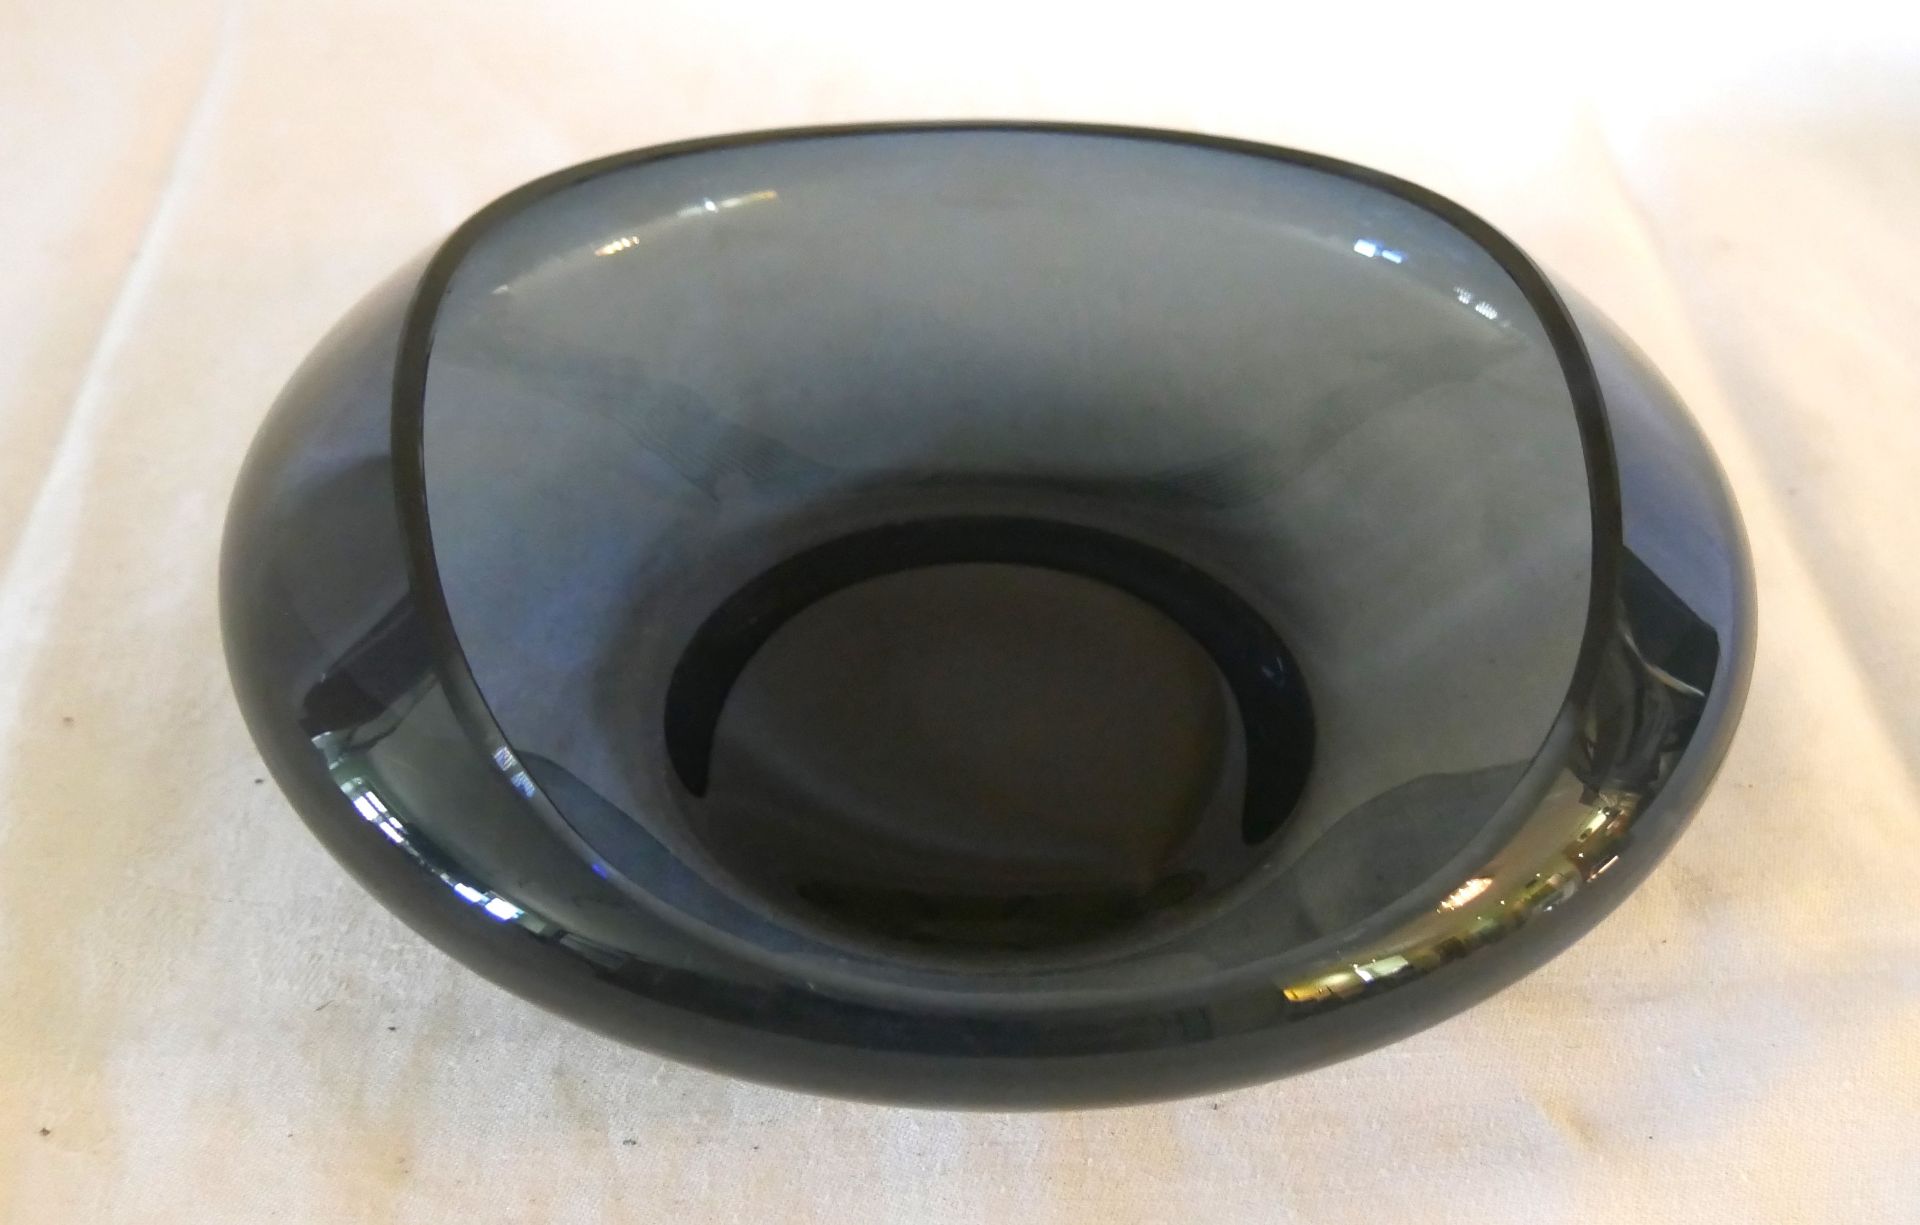 schöne runde Murano Glasschale in blauschwarz. Durchmesser ca. 22 cm, Höhe ca. 8 cm. Bitte